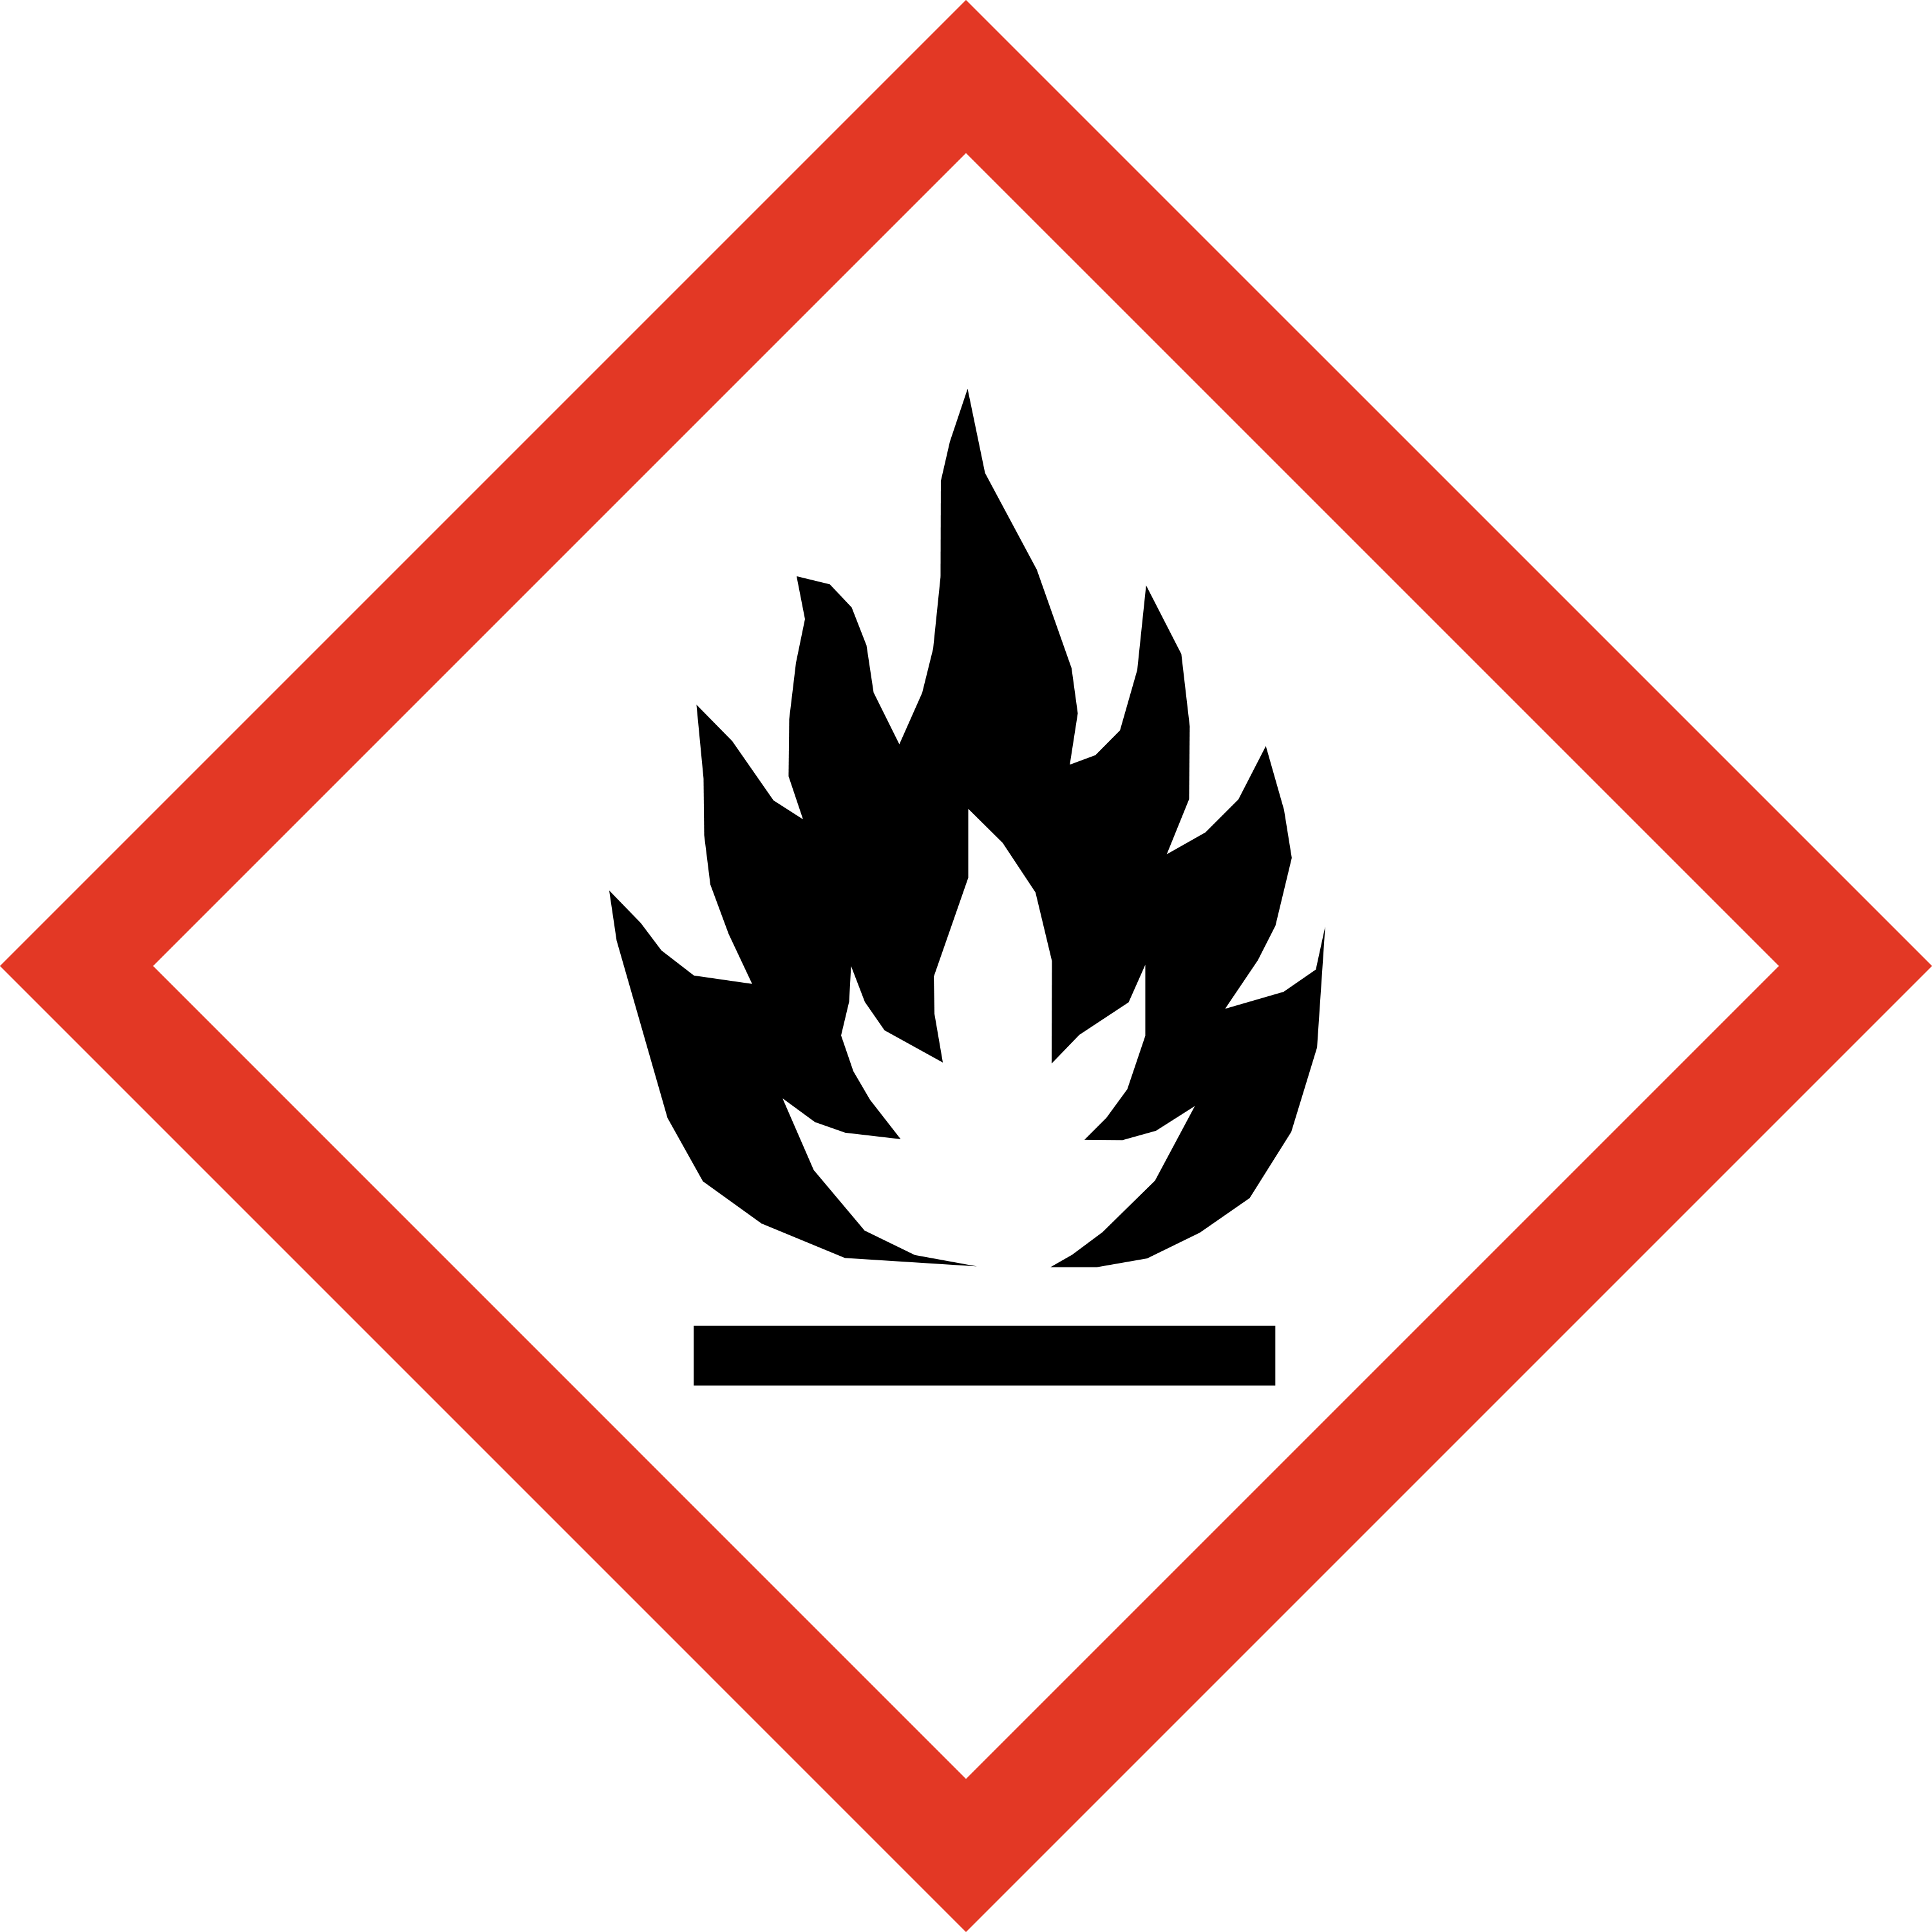 Danger pictogram, flammable substances